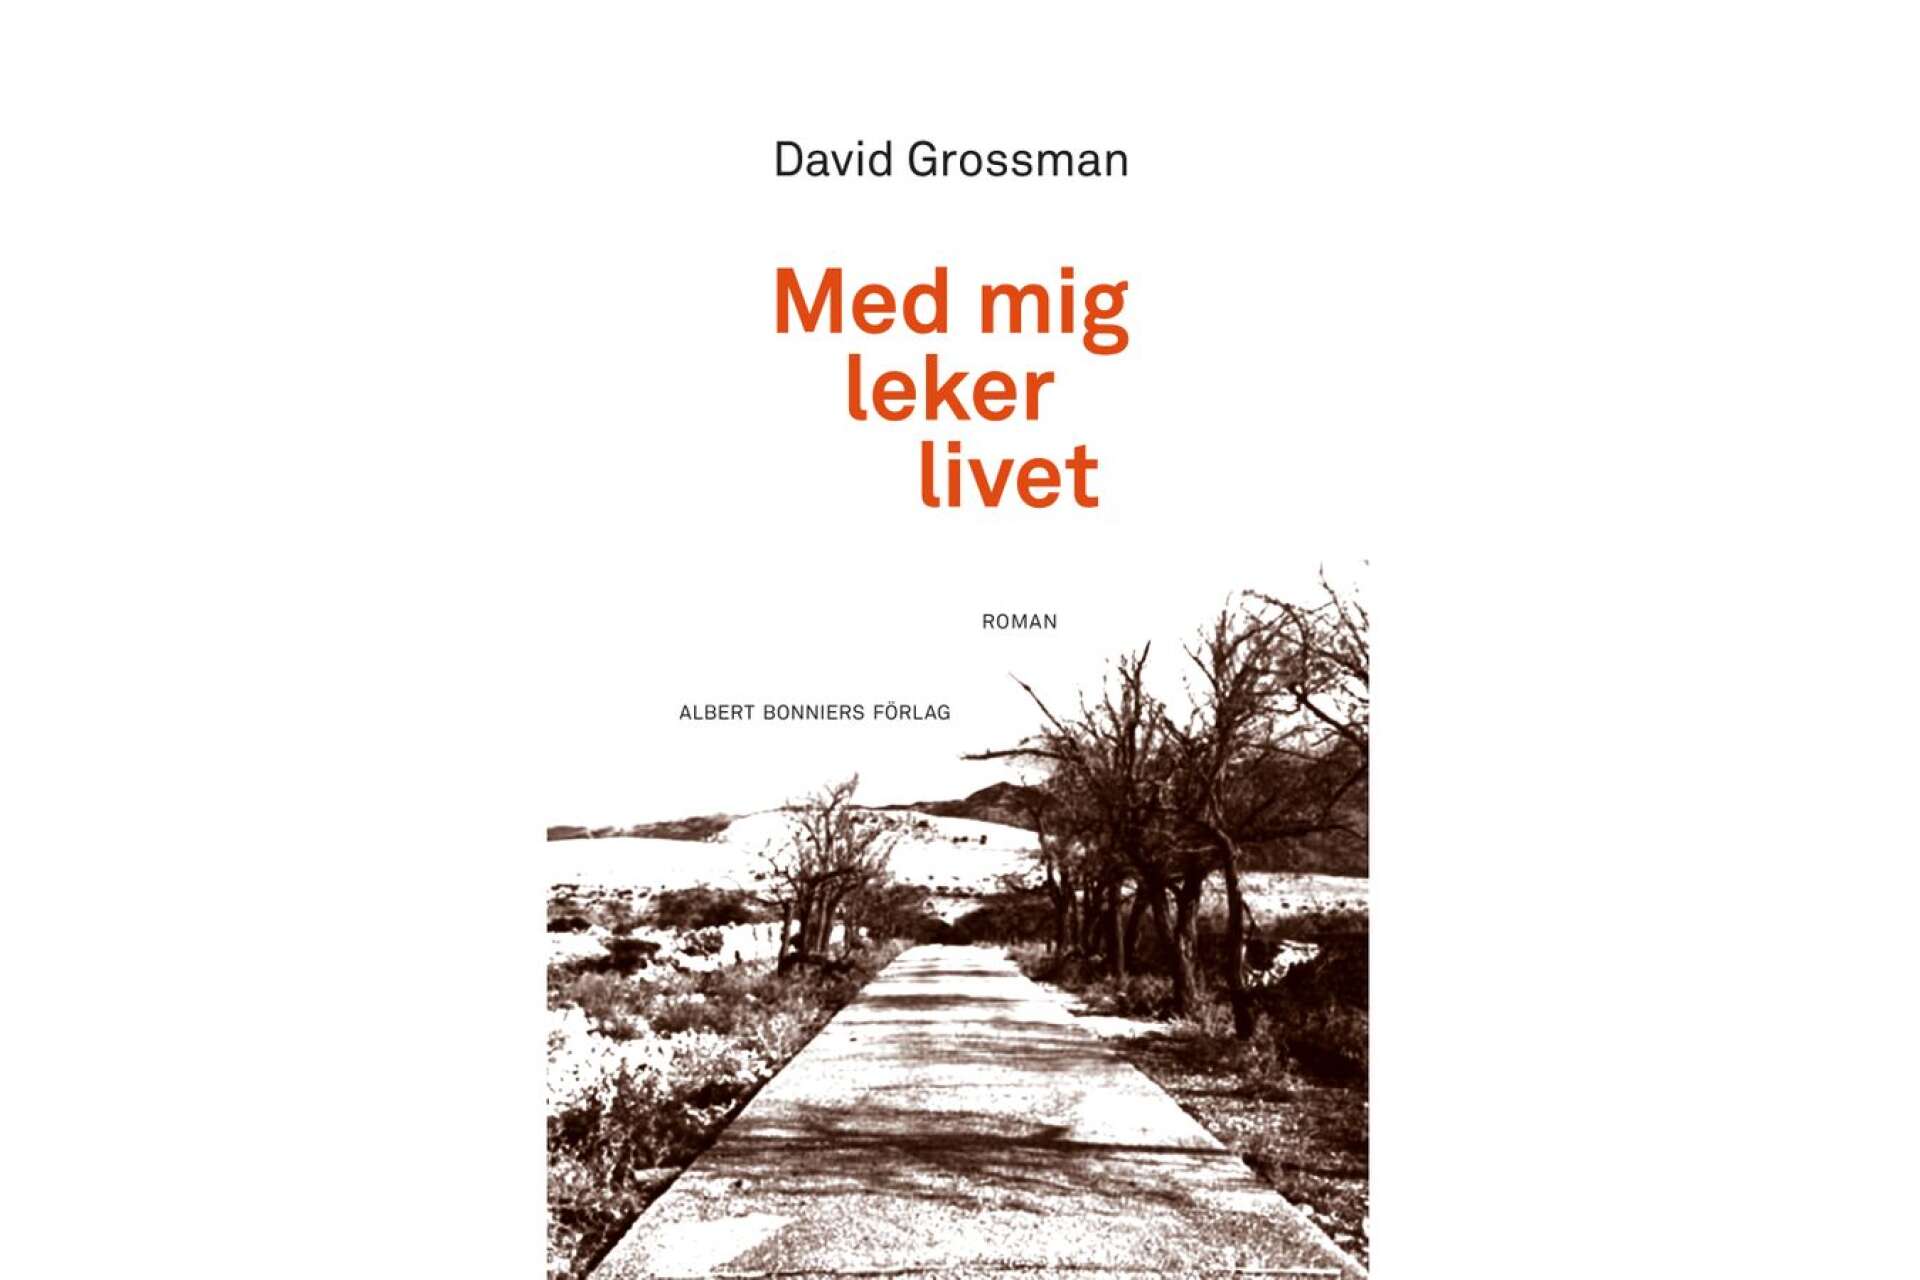 Titel: Med mig leker livet Författare: David Grossman Översättare: Natalie Lantz Förlag: Albert Bonniers